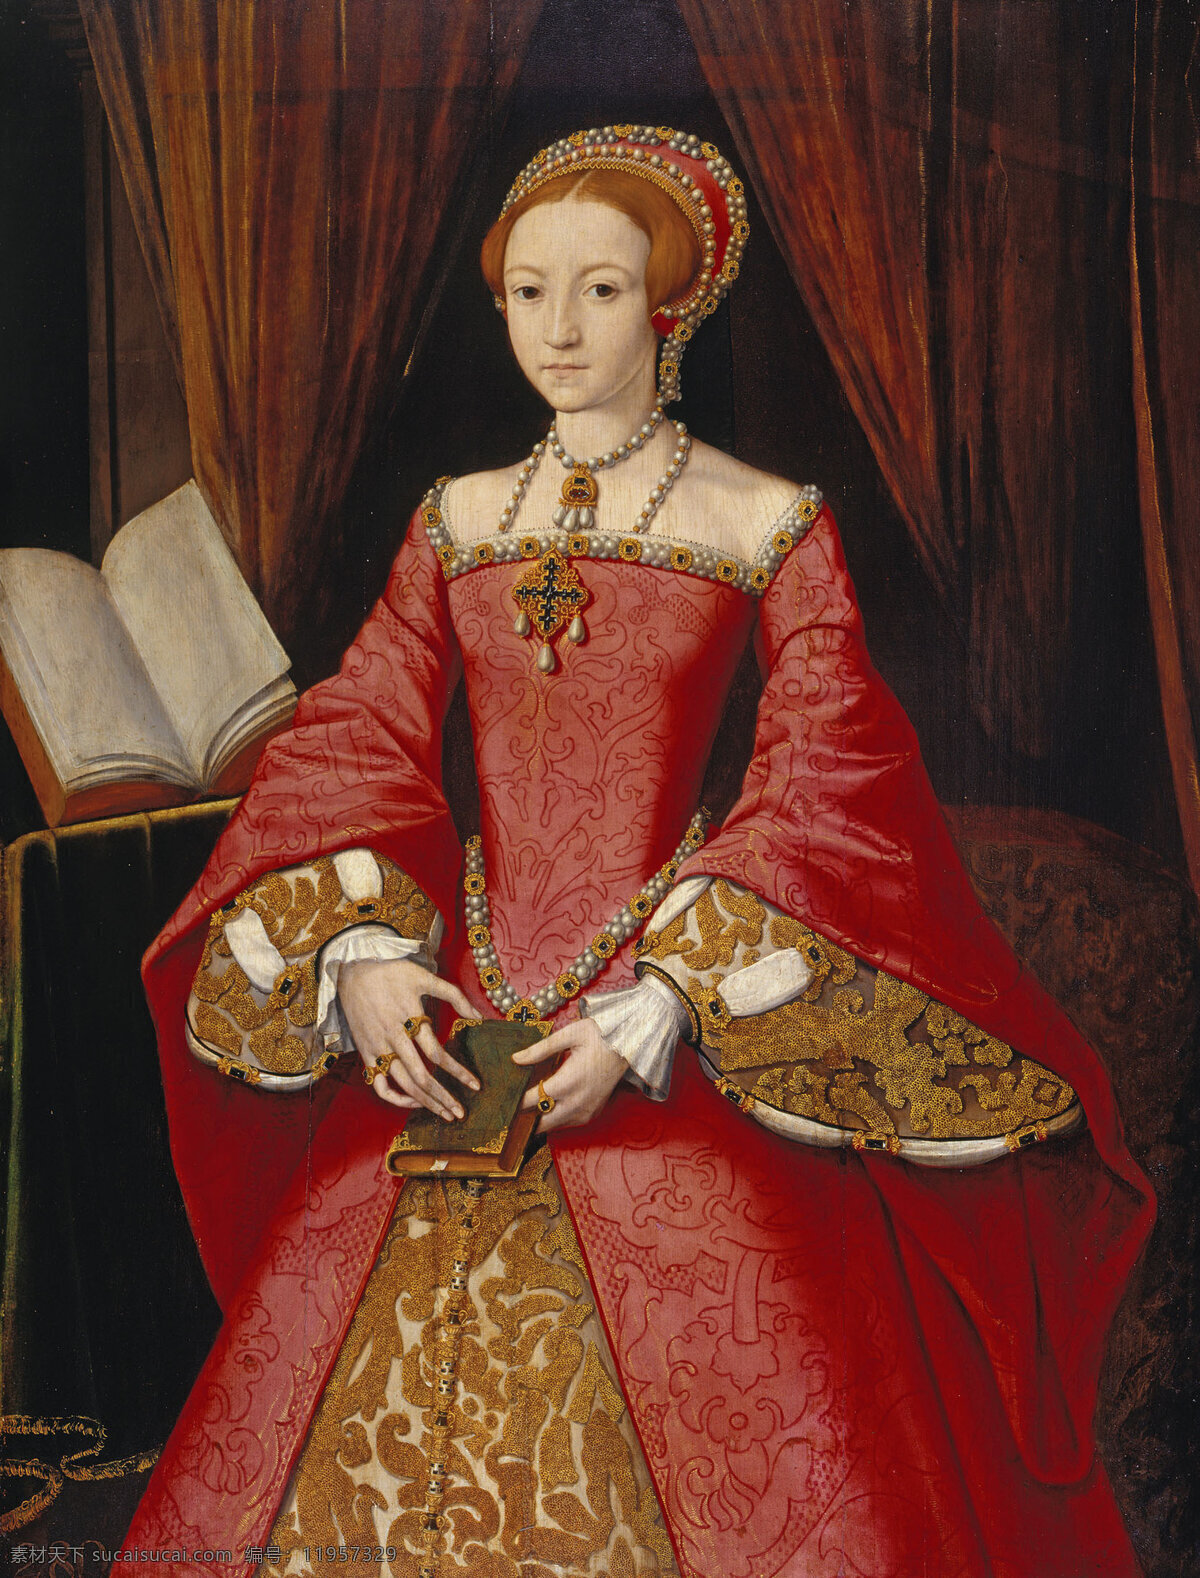 伊丽莎白 公主 16世纪油画 绘画书法 书本 文化艺术 伊丽莎白公主 英国公主 伊丽莎白一世 装饰素材